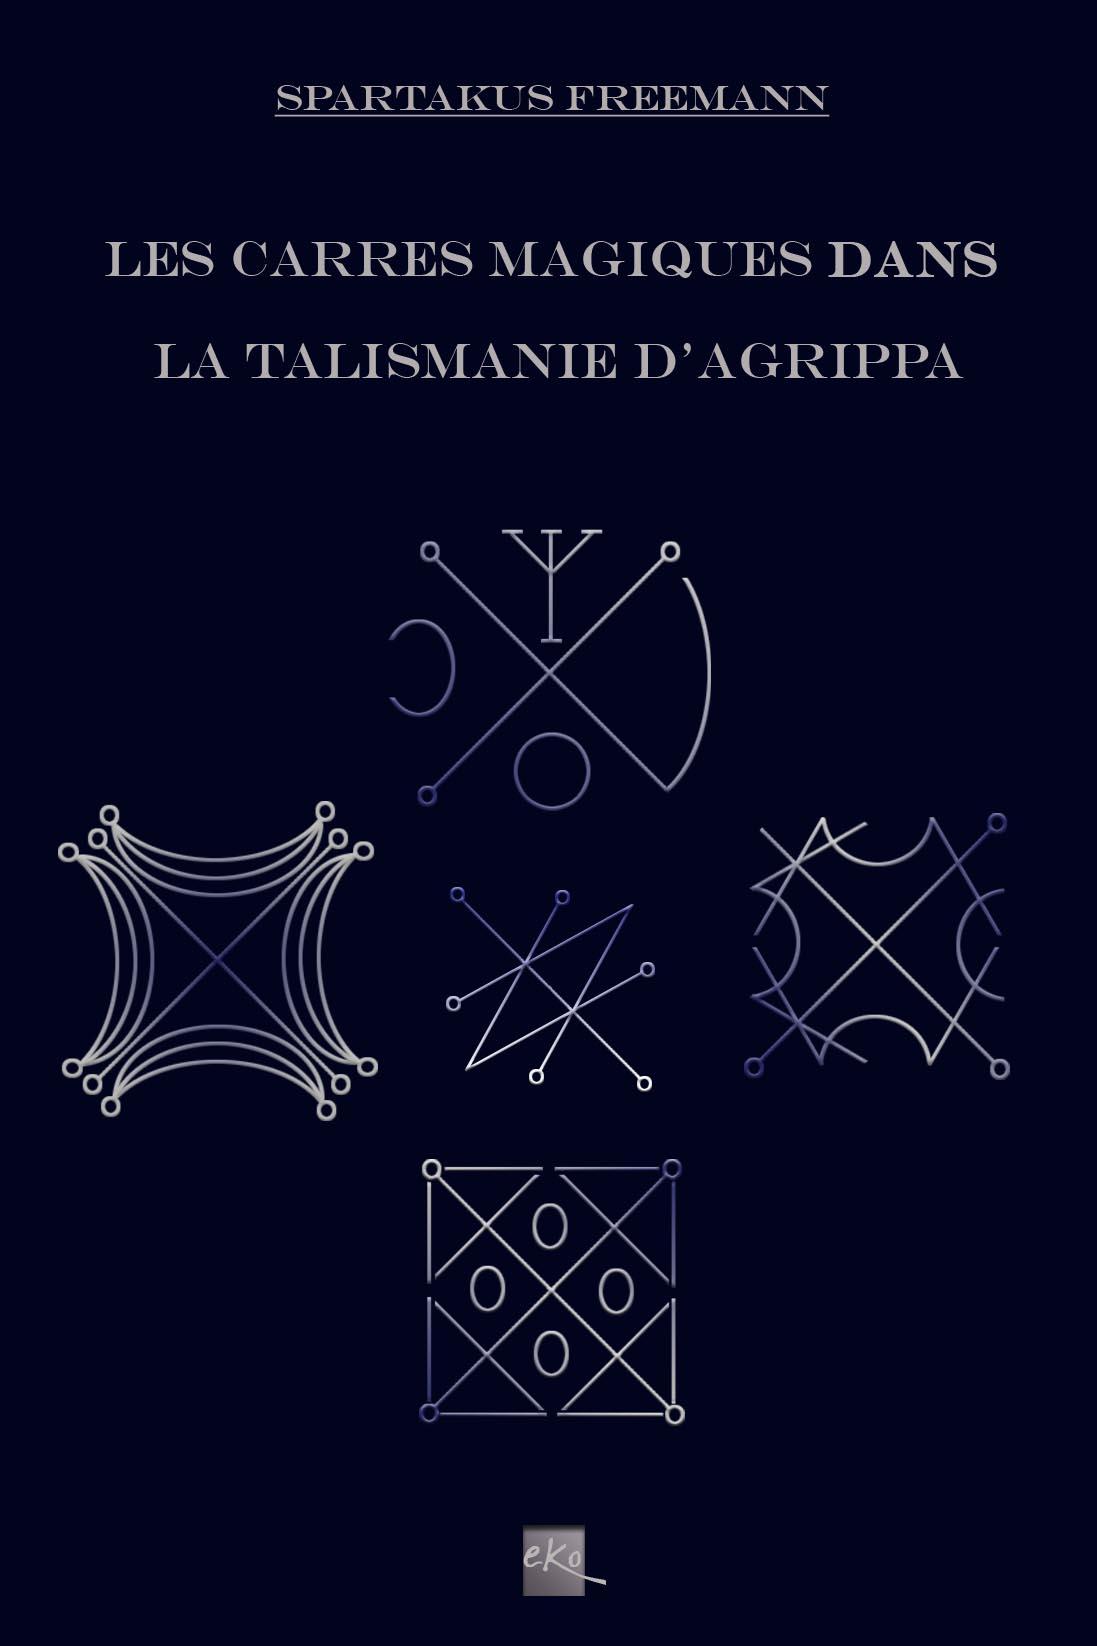 AgrippaCouv01 - Les Carrés Magiques dans la Talismanie d'Agrippa